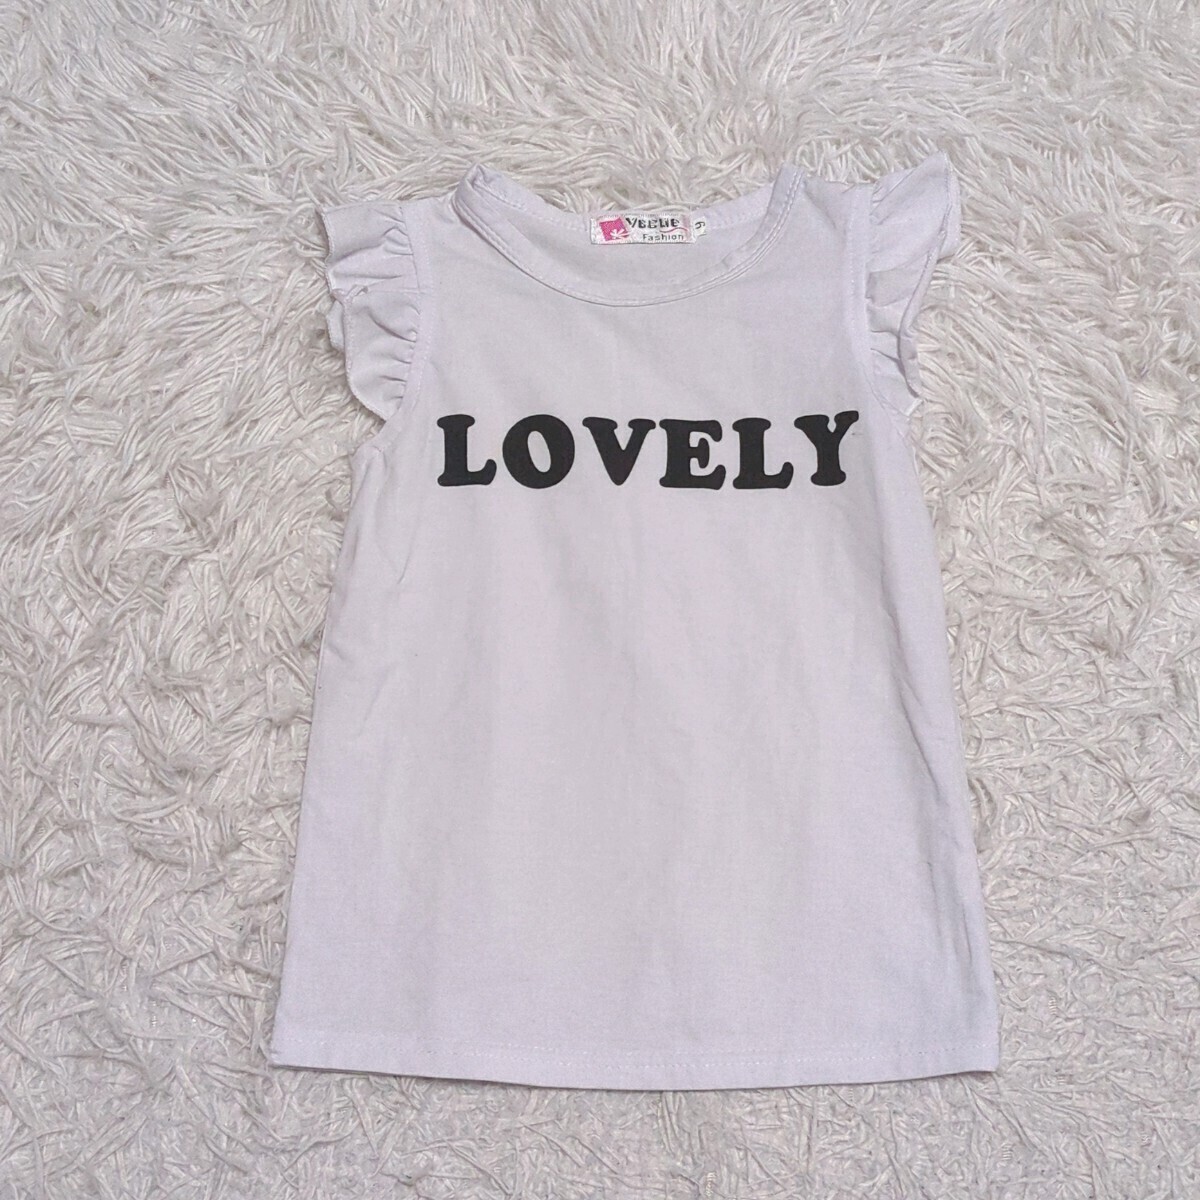 [ бесплатная доставка ]vegue tops футболка 6 120cm примерно девочка Kids ребенок одежда 